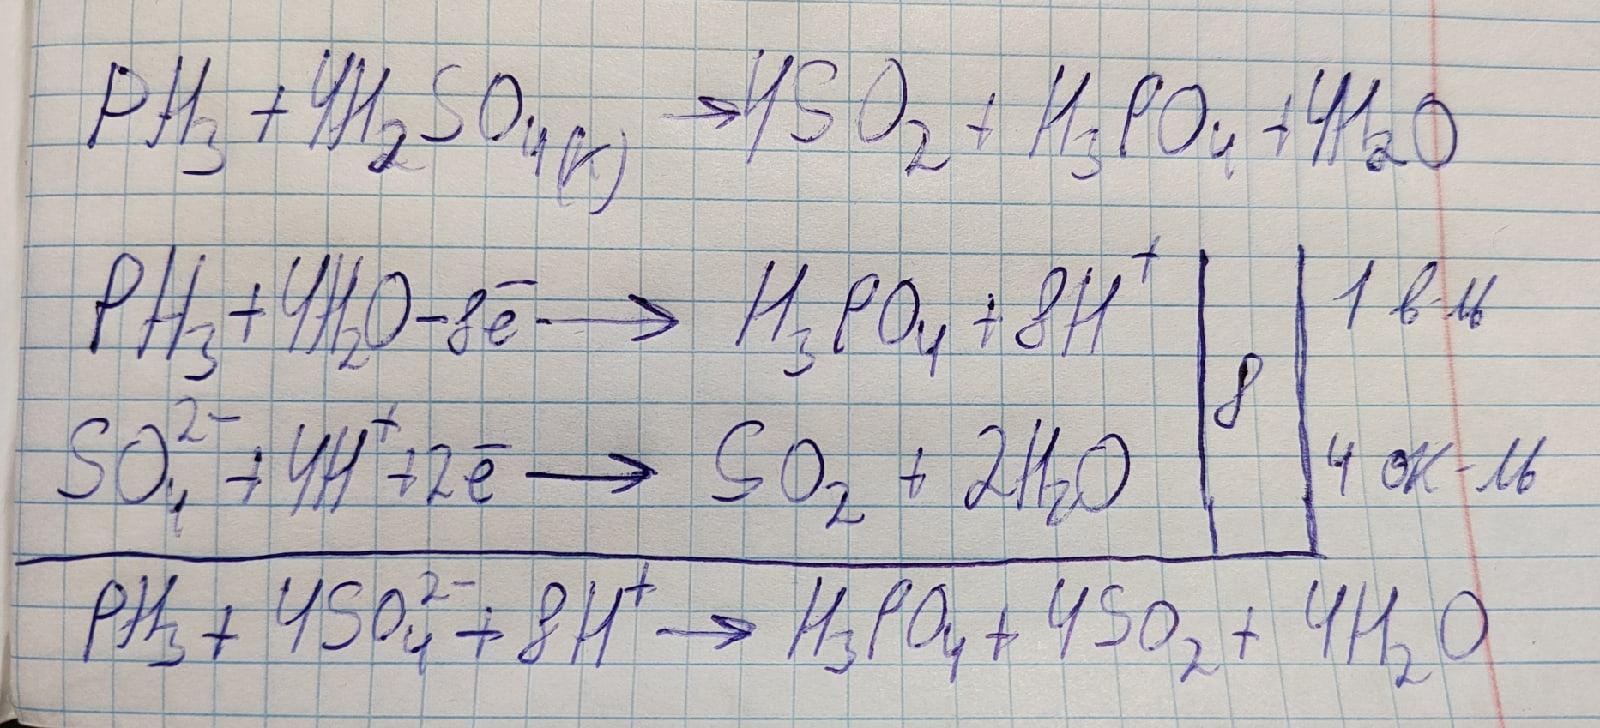 Al2o3 h2so4 коэффициенты. Метод электронно-ионного баланса. Ph3 h2so4 конц. Электронно ионный баланс. Fe+h2so4 конц электронный баланс.